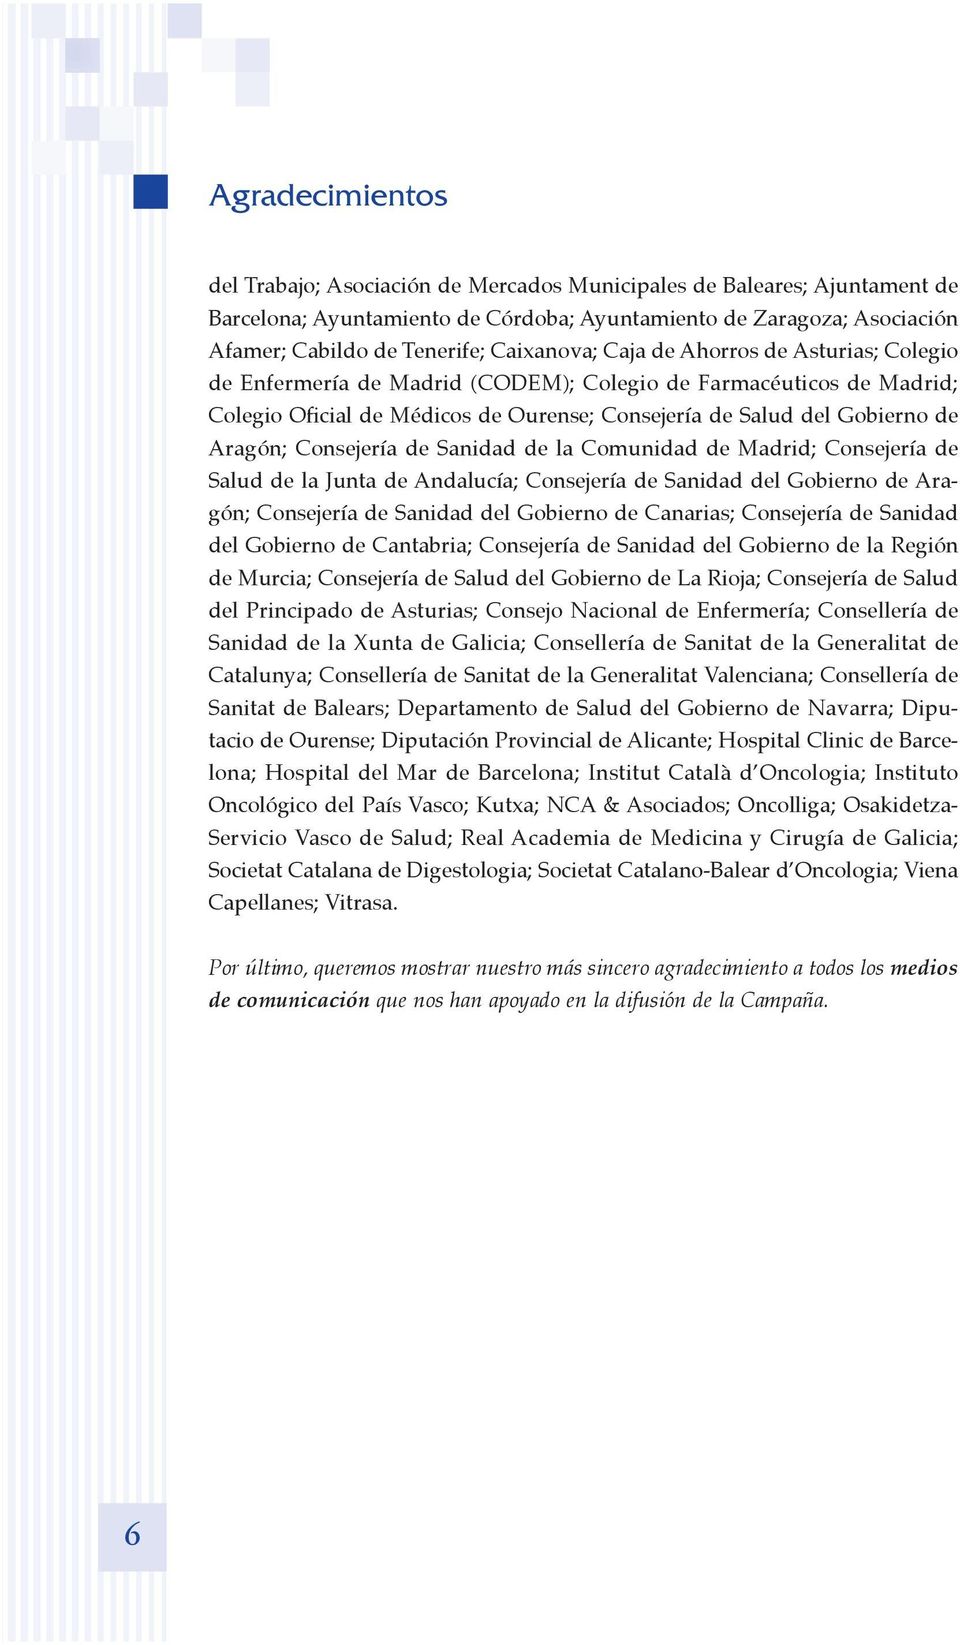 Consejería de Sanidad de la Comunidad de Madrid; Consejería de Salud de la Junta de Andalucía; Consejería de Sanidad del Gobierno de Aragón; Consejería de Sanidad del Gobierno de Canarias; Consejería